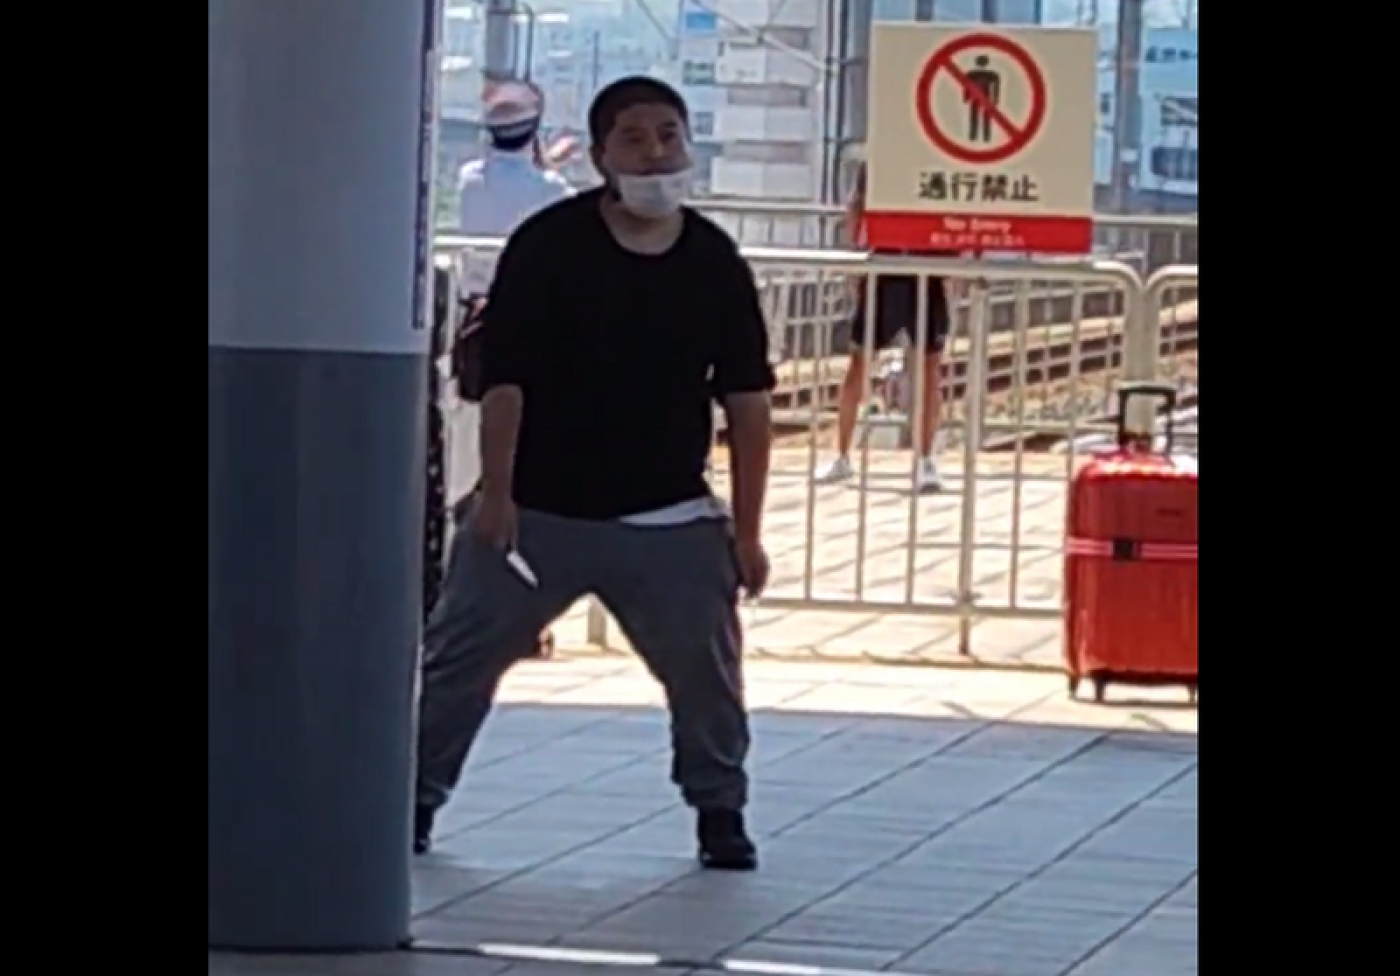 日本大阪臨空城車站驚傳歹徒持刀亂砍，造成3人受傷。圖為嫌犯持刀在月台上和警察對峙。翻攝tokyoaccident推特